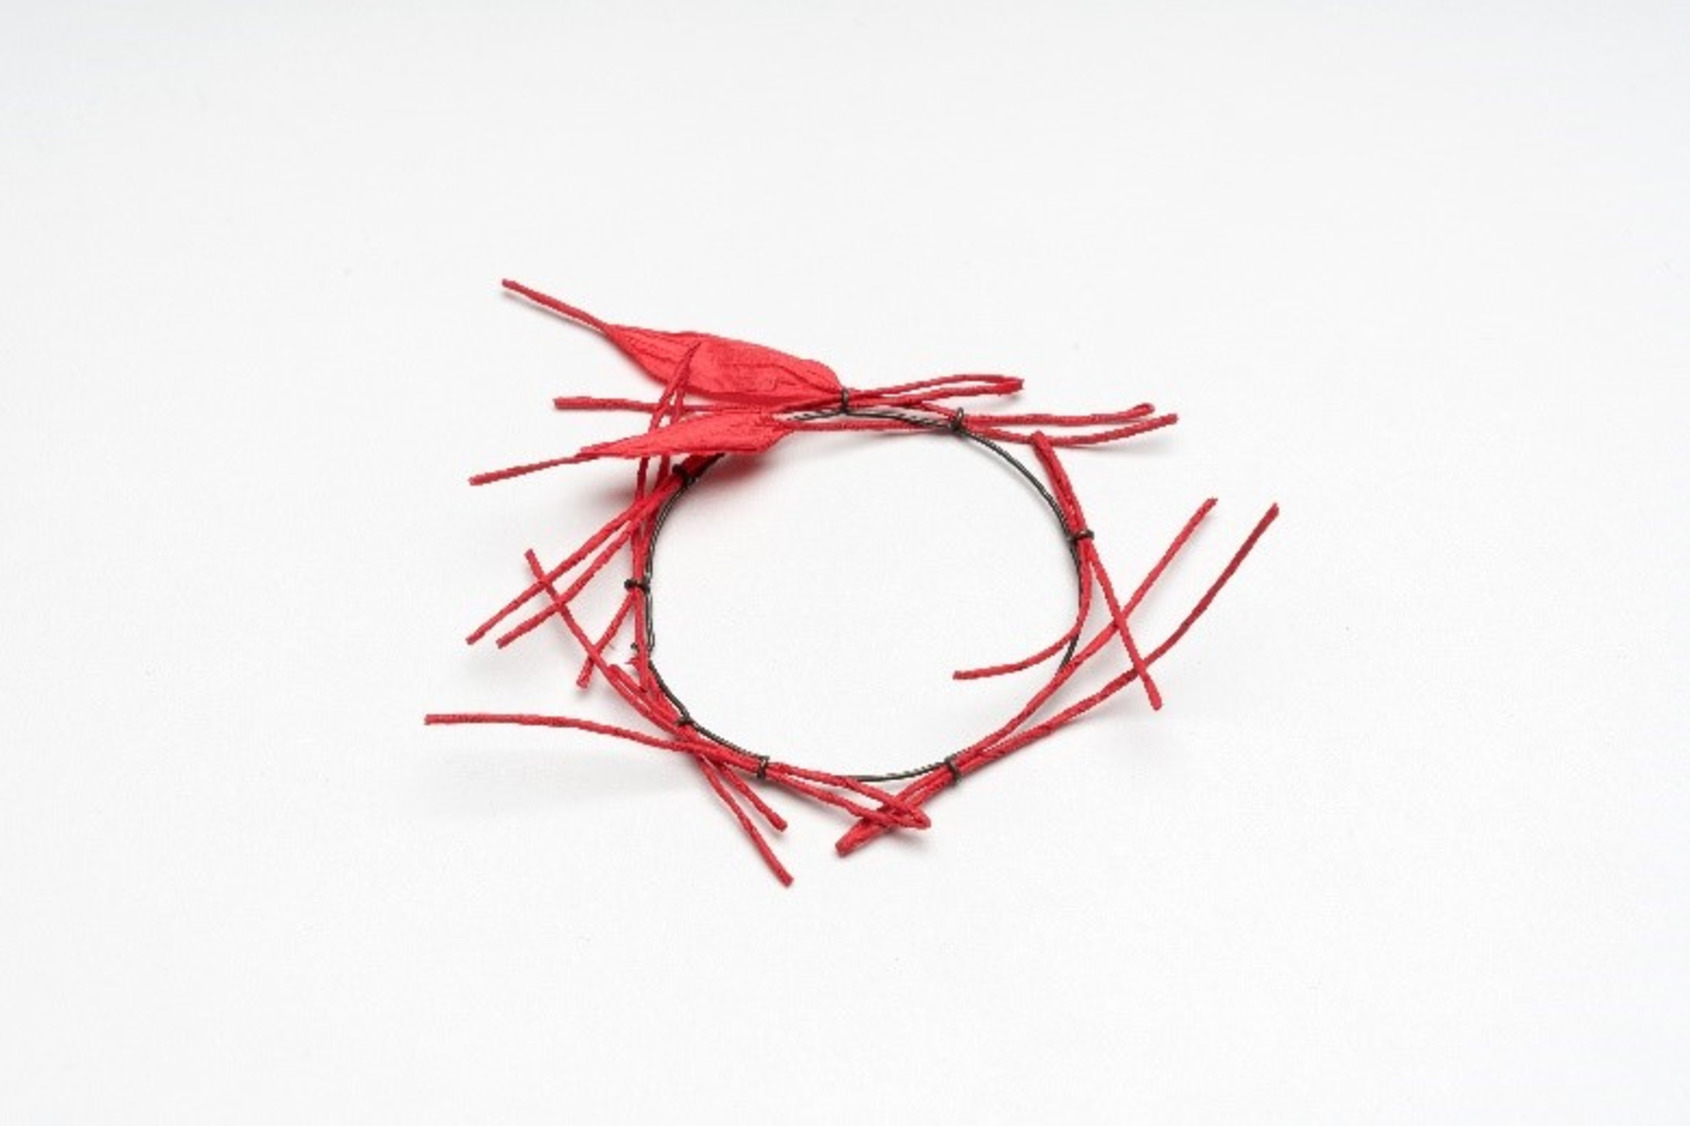 Brooch, mild steel wire, paper cord, 2018, 7x7x1cm by Franz Bette ©ALIEN ART 